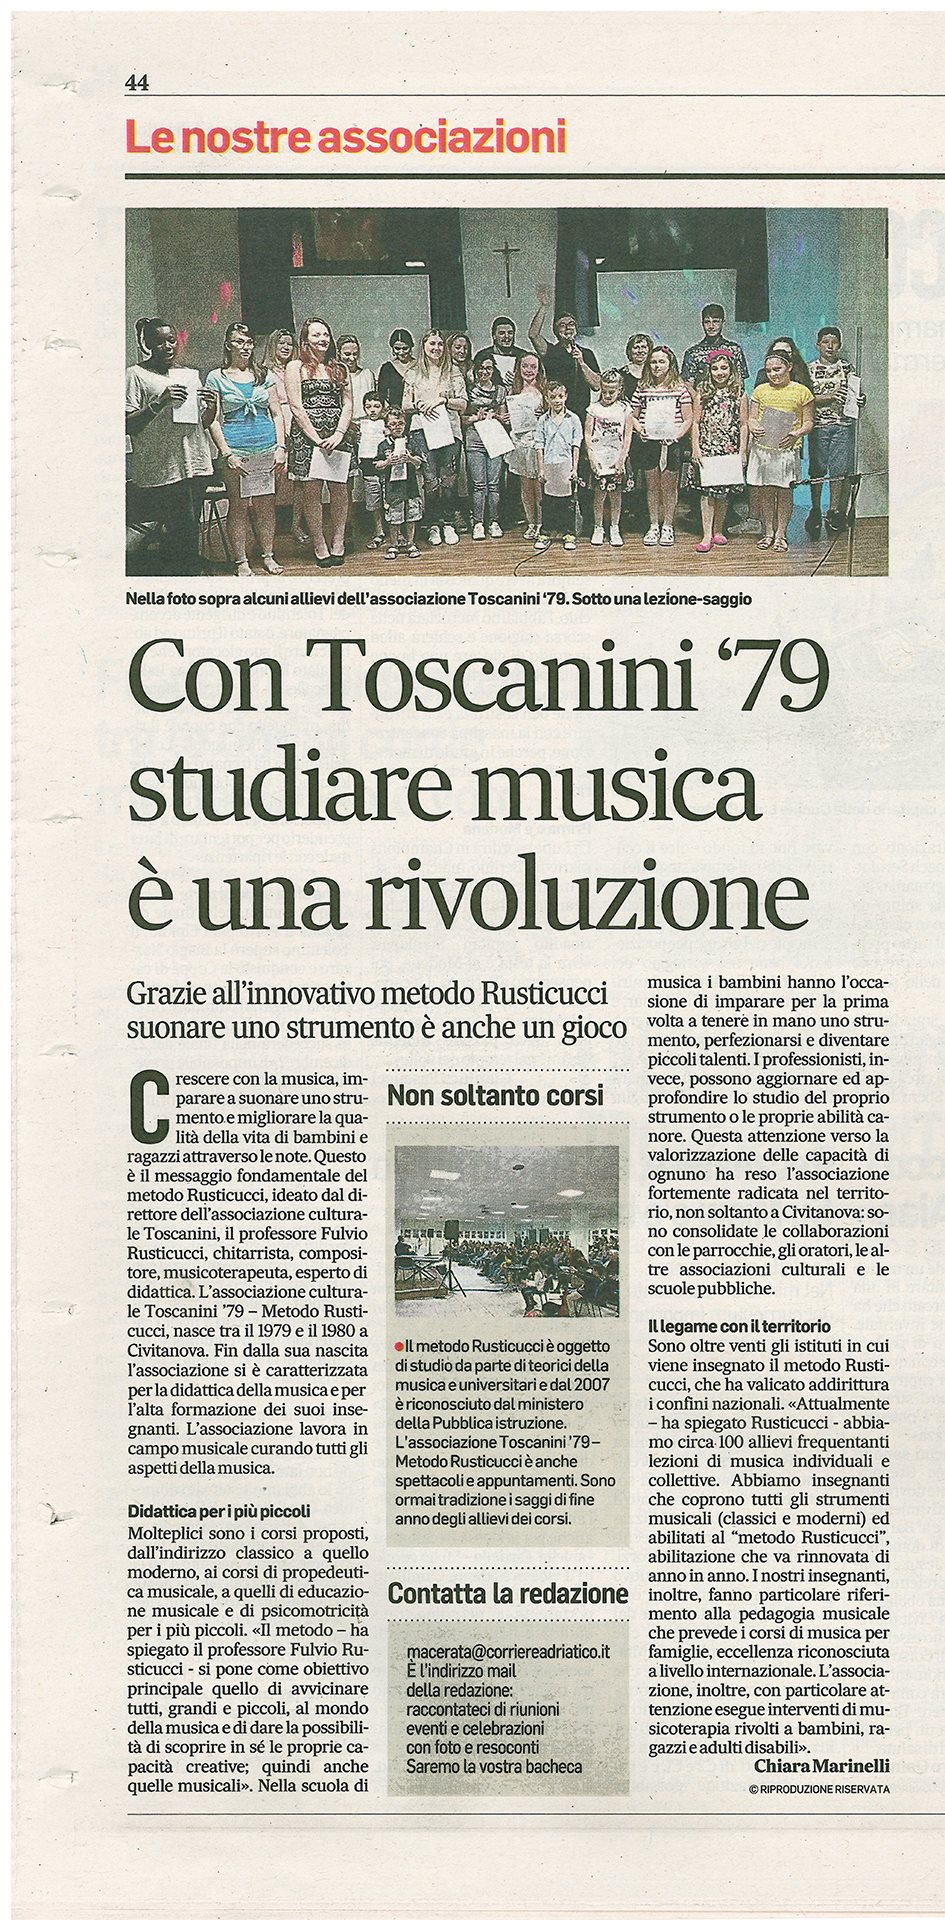 Con Toscanini '79 studiare musica è una rivoluzione!